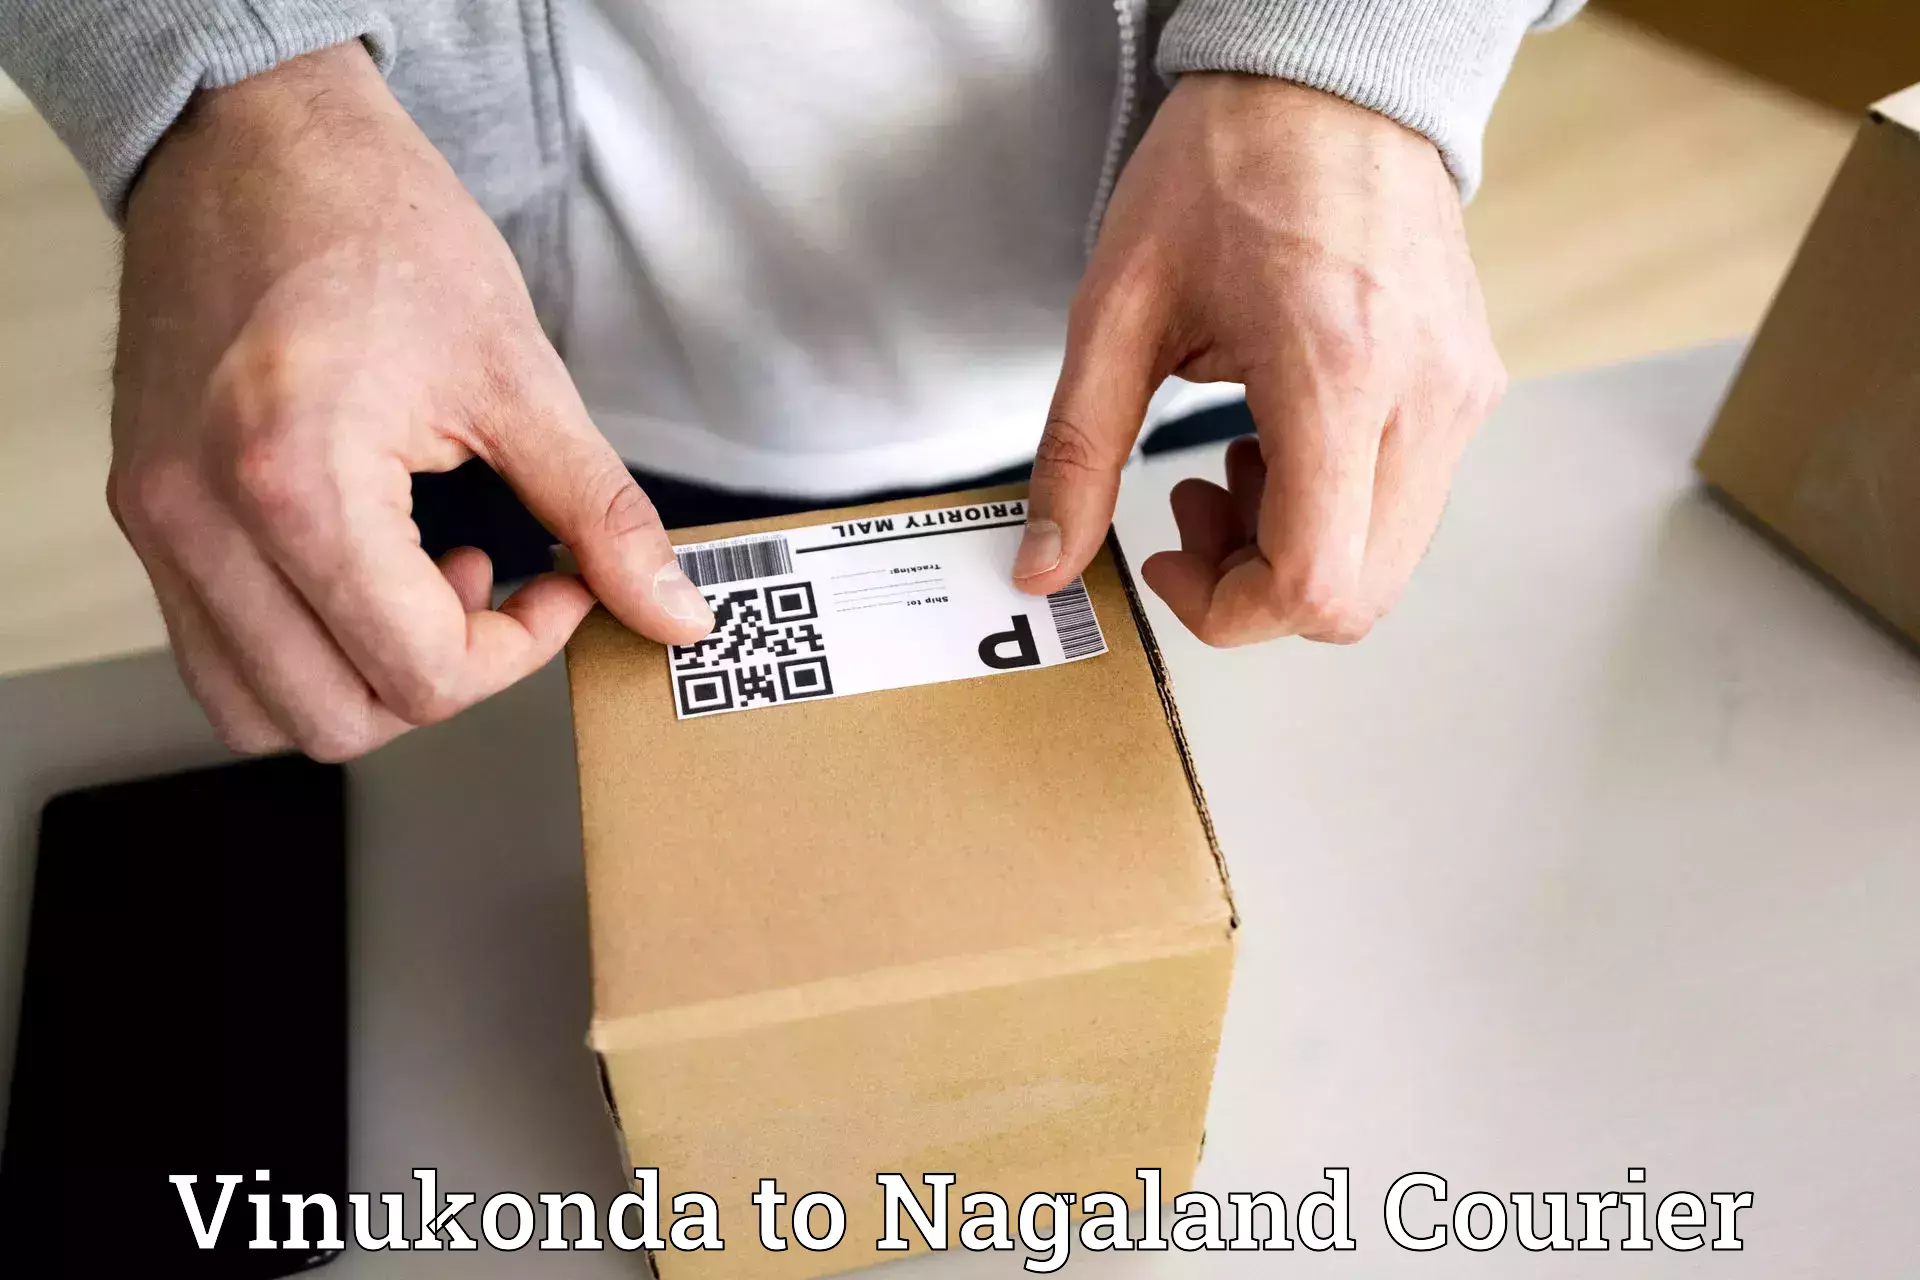 Tracking updates Vinukonda to NIT Nagaland